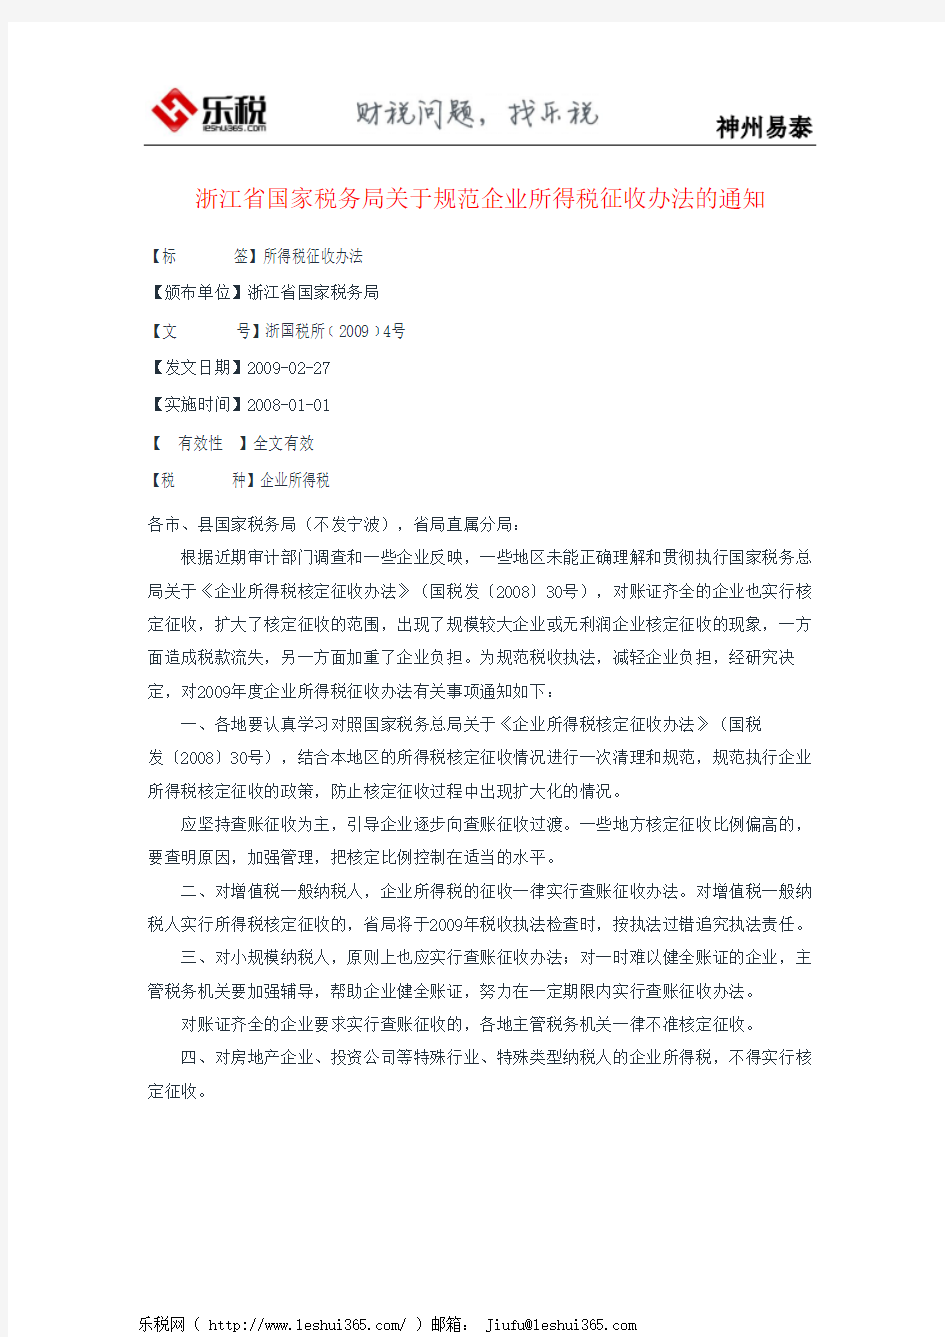 浙江省国家税务局关于规范企业所得税征收办法的通知